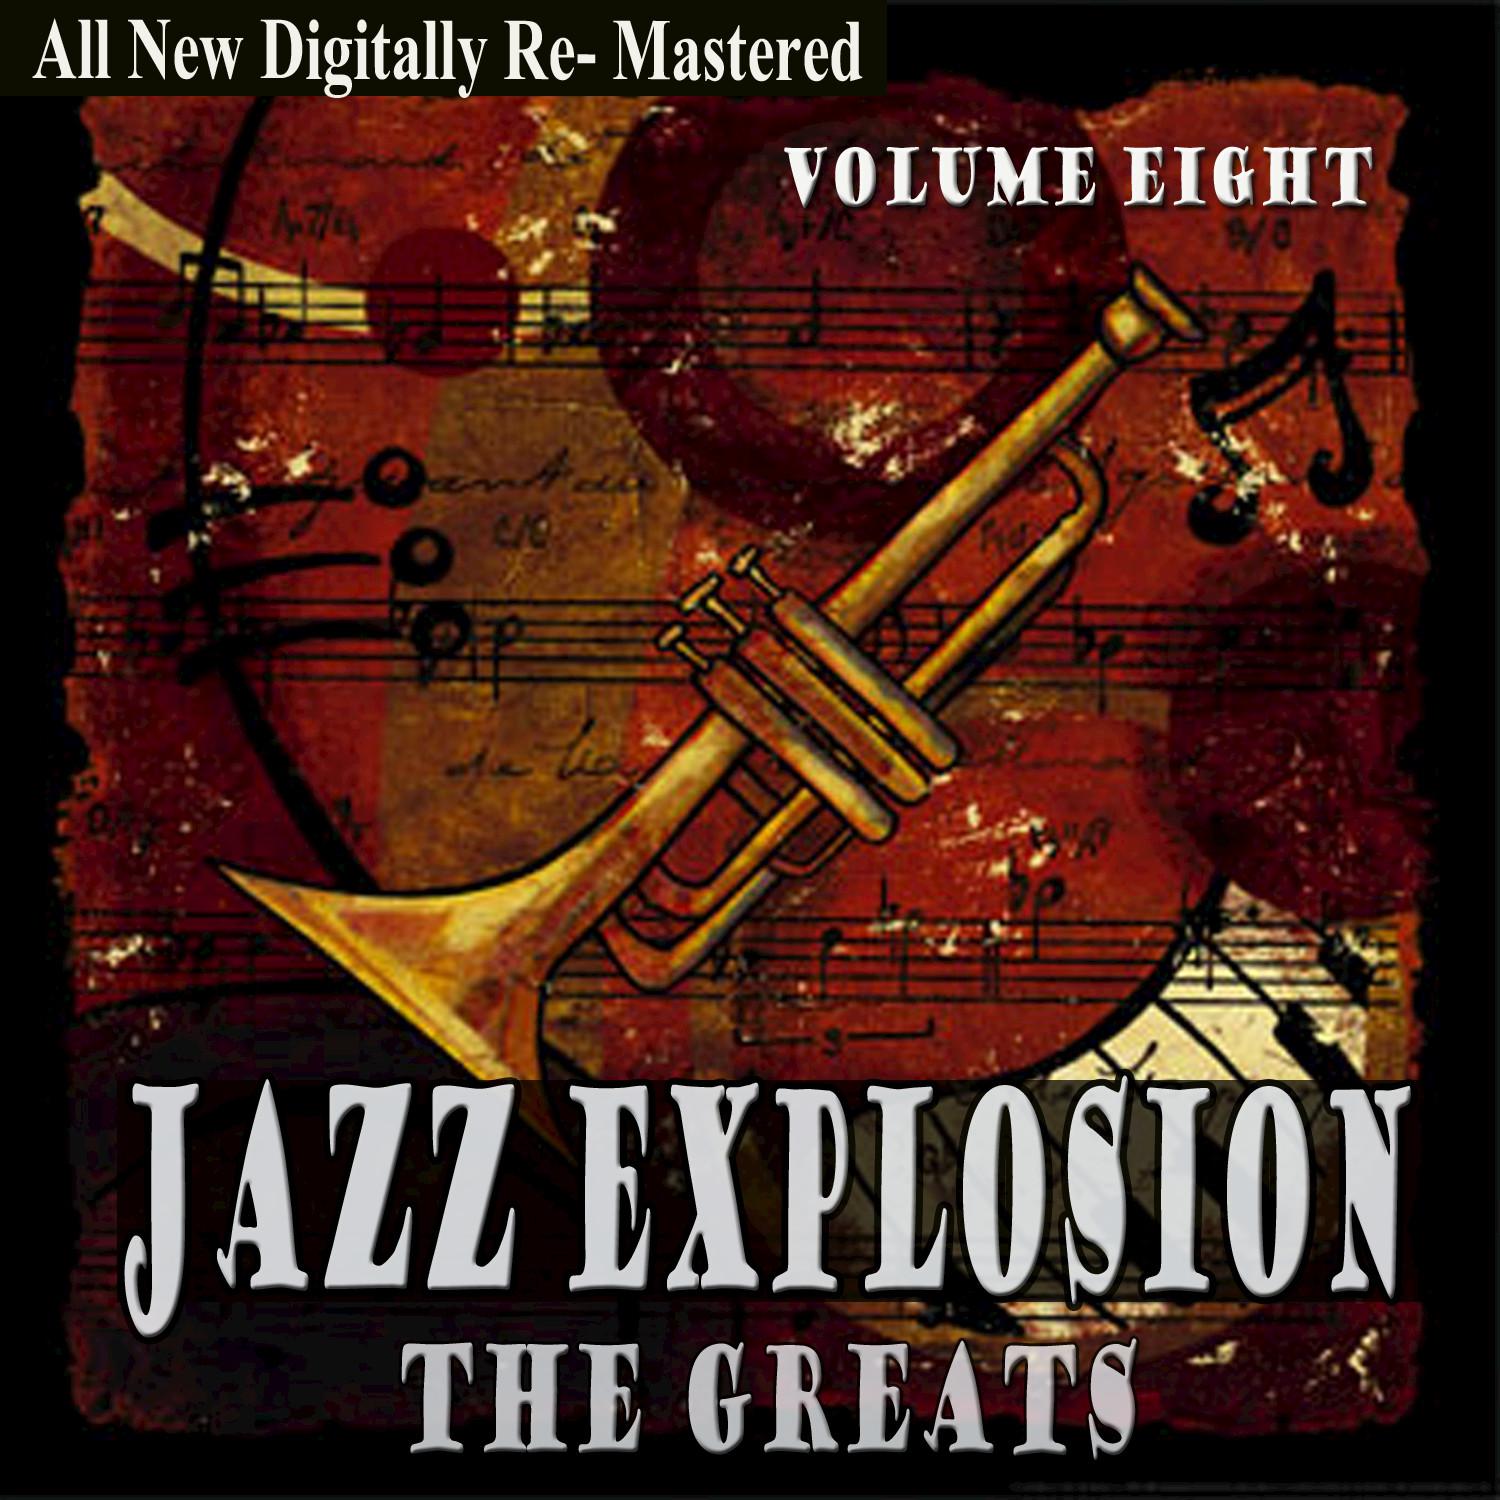 Jazz Explosion - The Greats Volume Eight